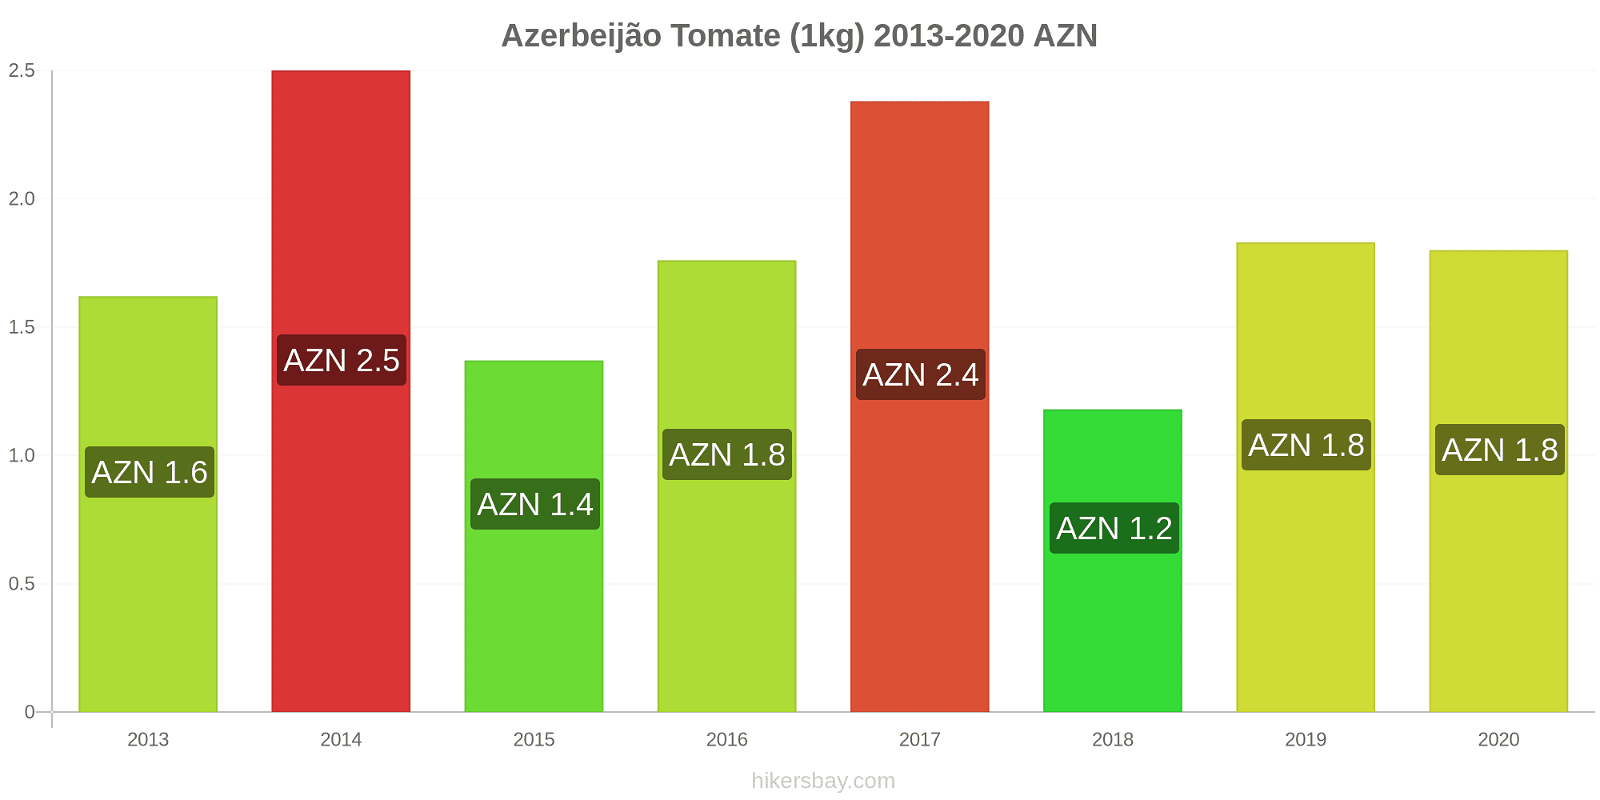 Azerbeijão variação de preço Tomate (1kg) hikersbay.com